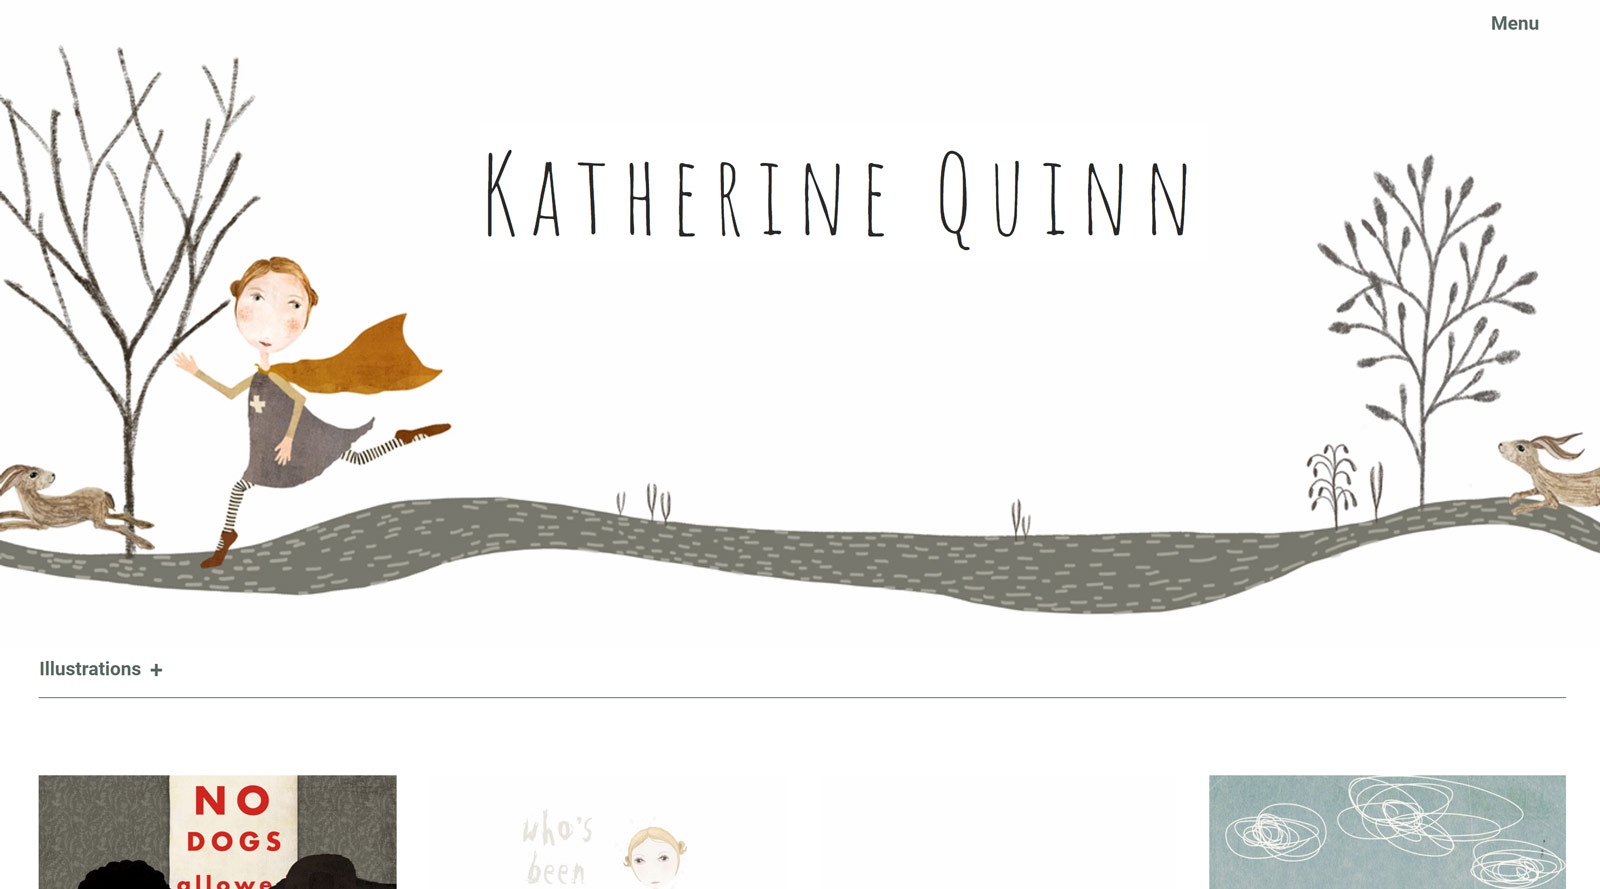 Katherine Quinn